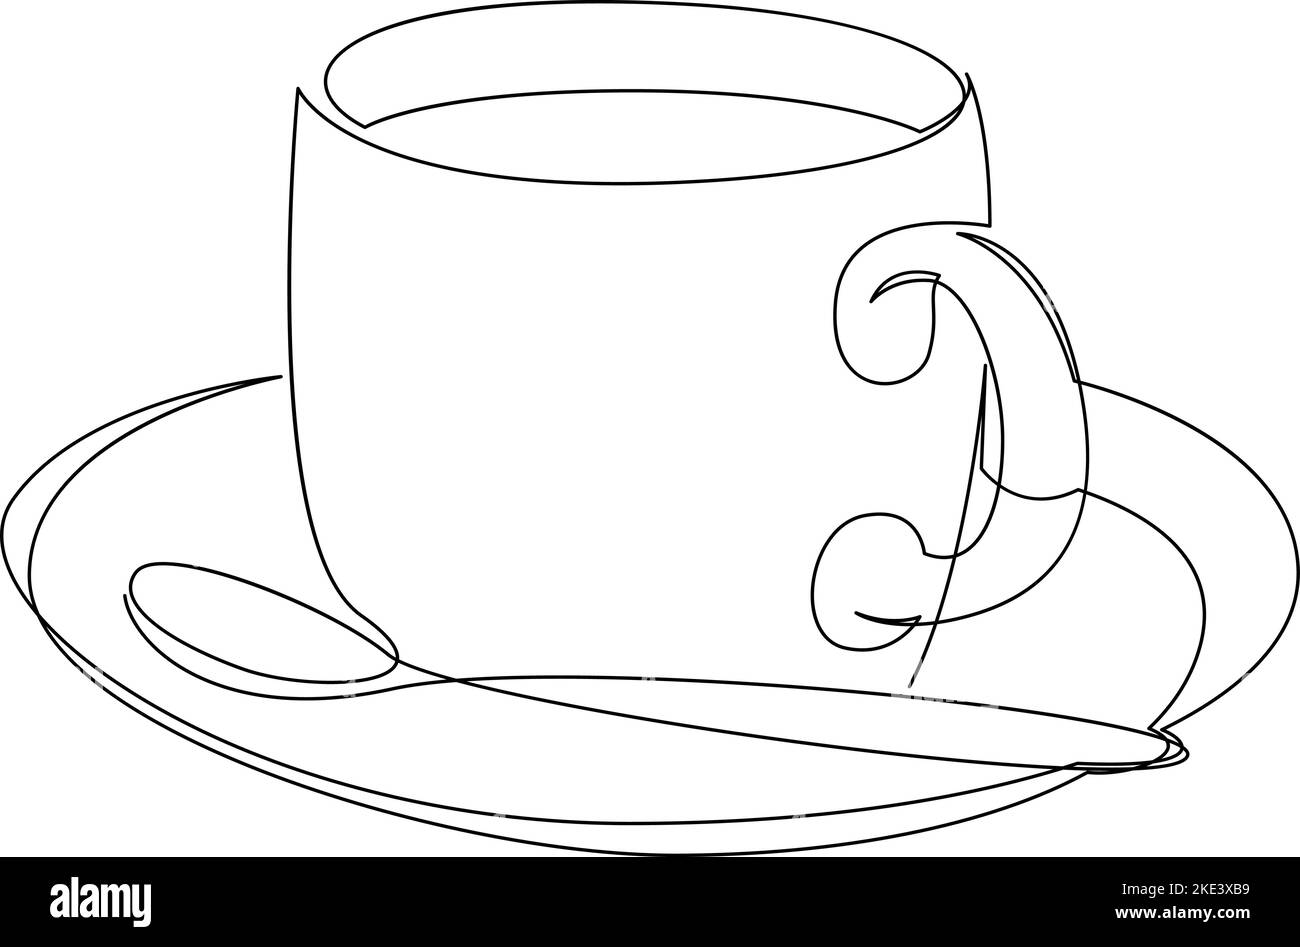 Tazzina di caffè con disegno a una linea con piatto e cucchiaio. Design semplice a lineart continuo. Vettore disegnato a mano Illustrazione Vettoriale